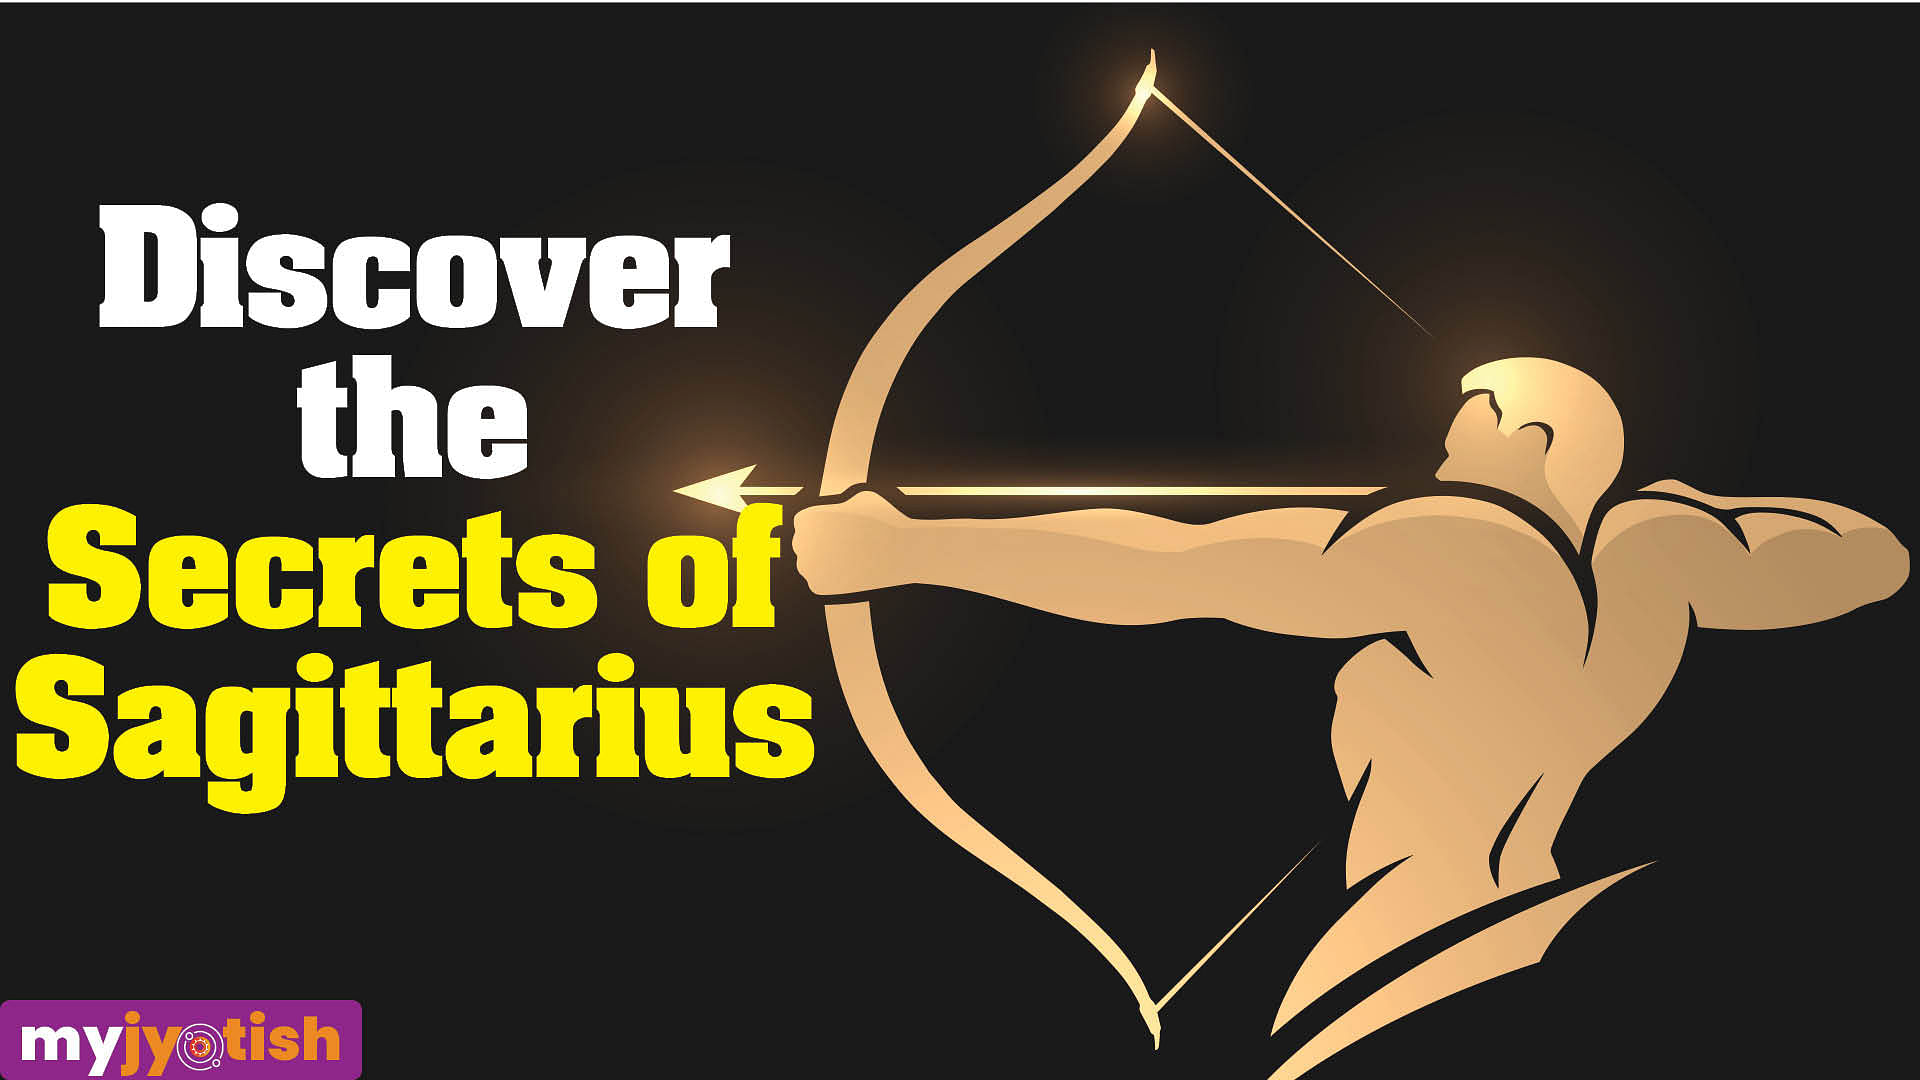 Discover the Secrets of Sagittarius